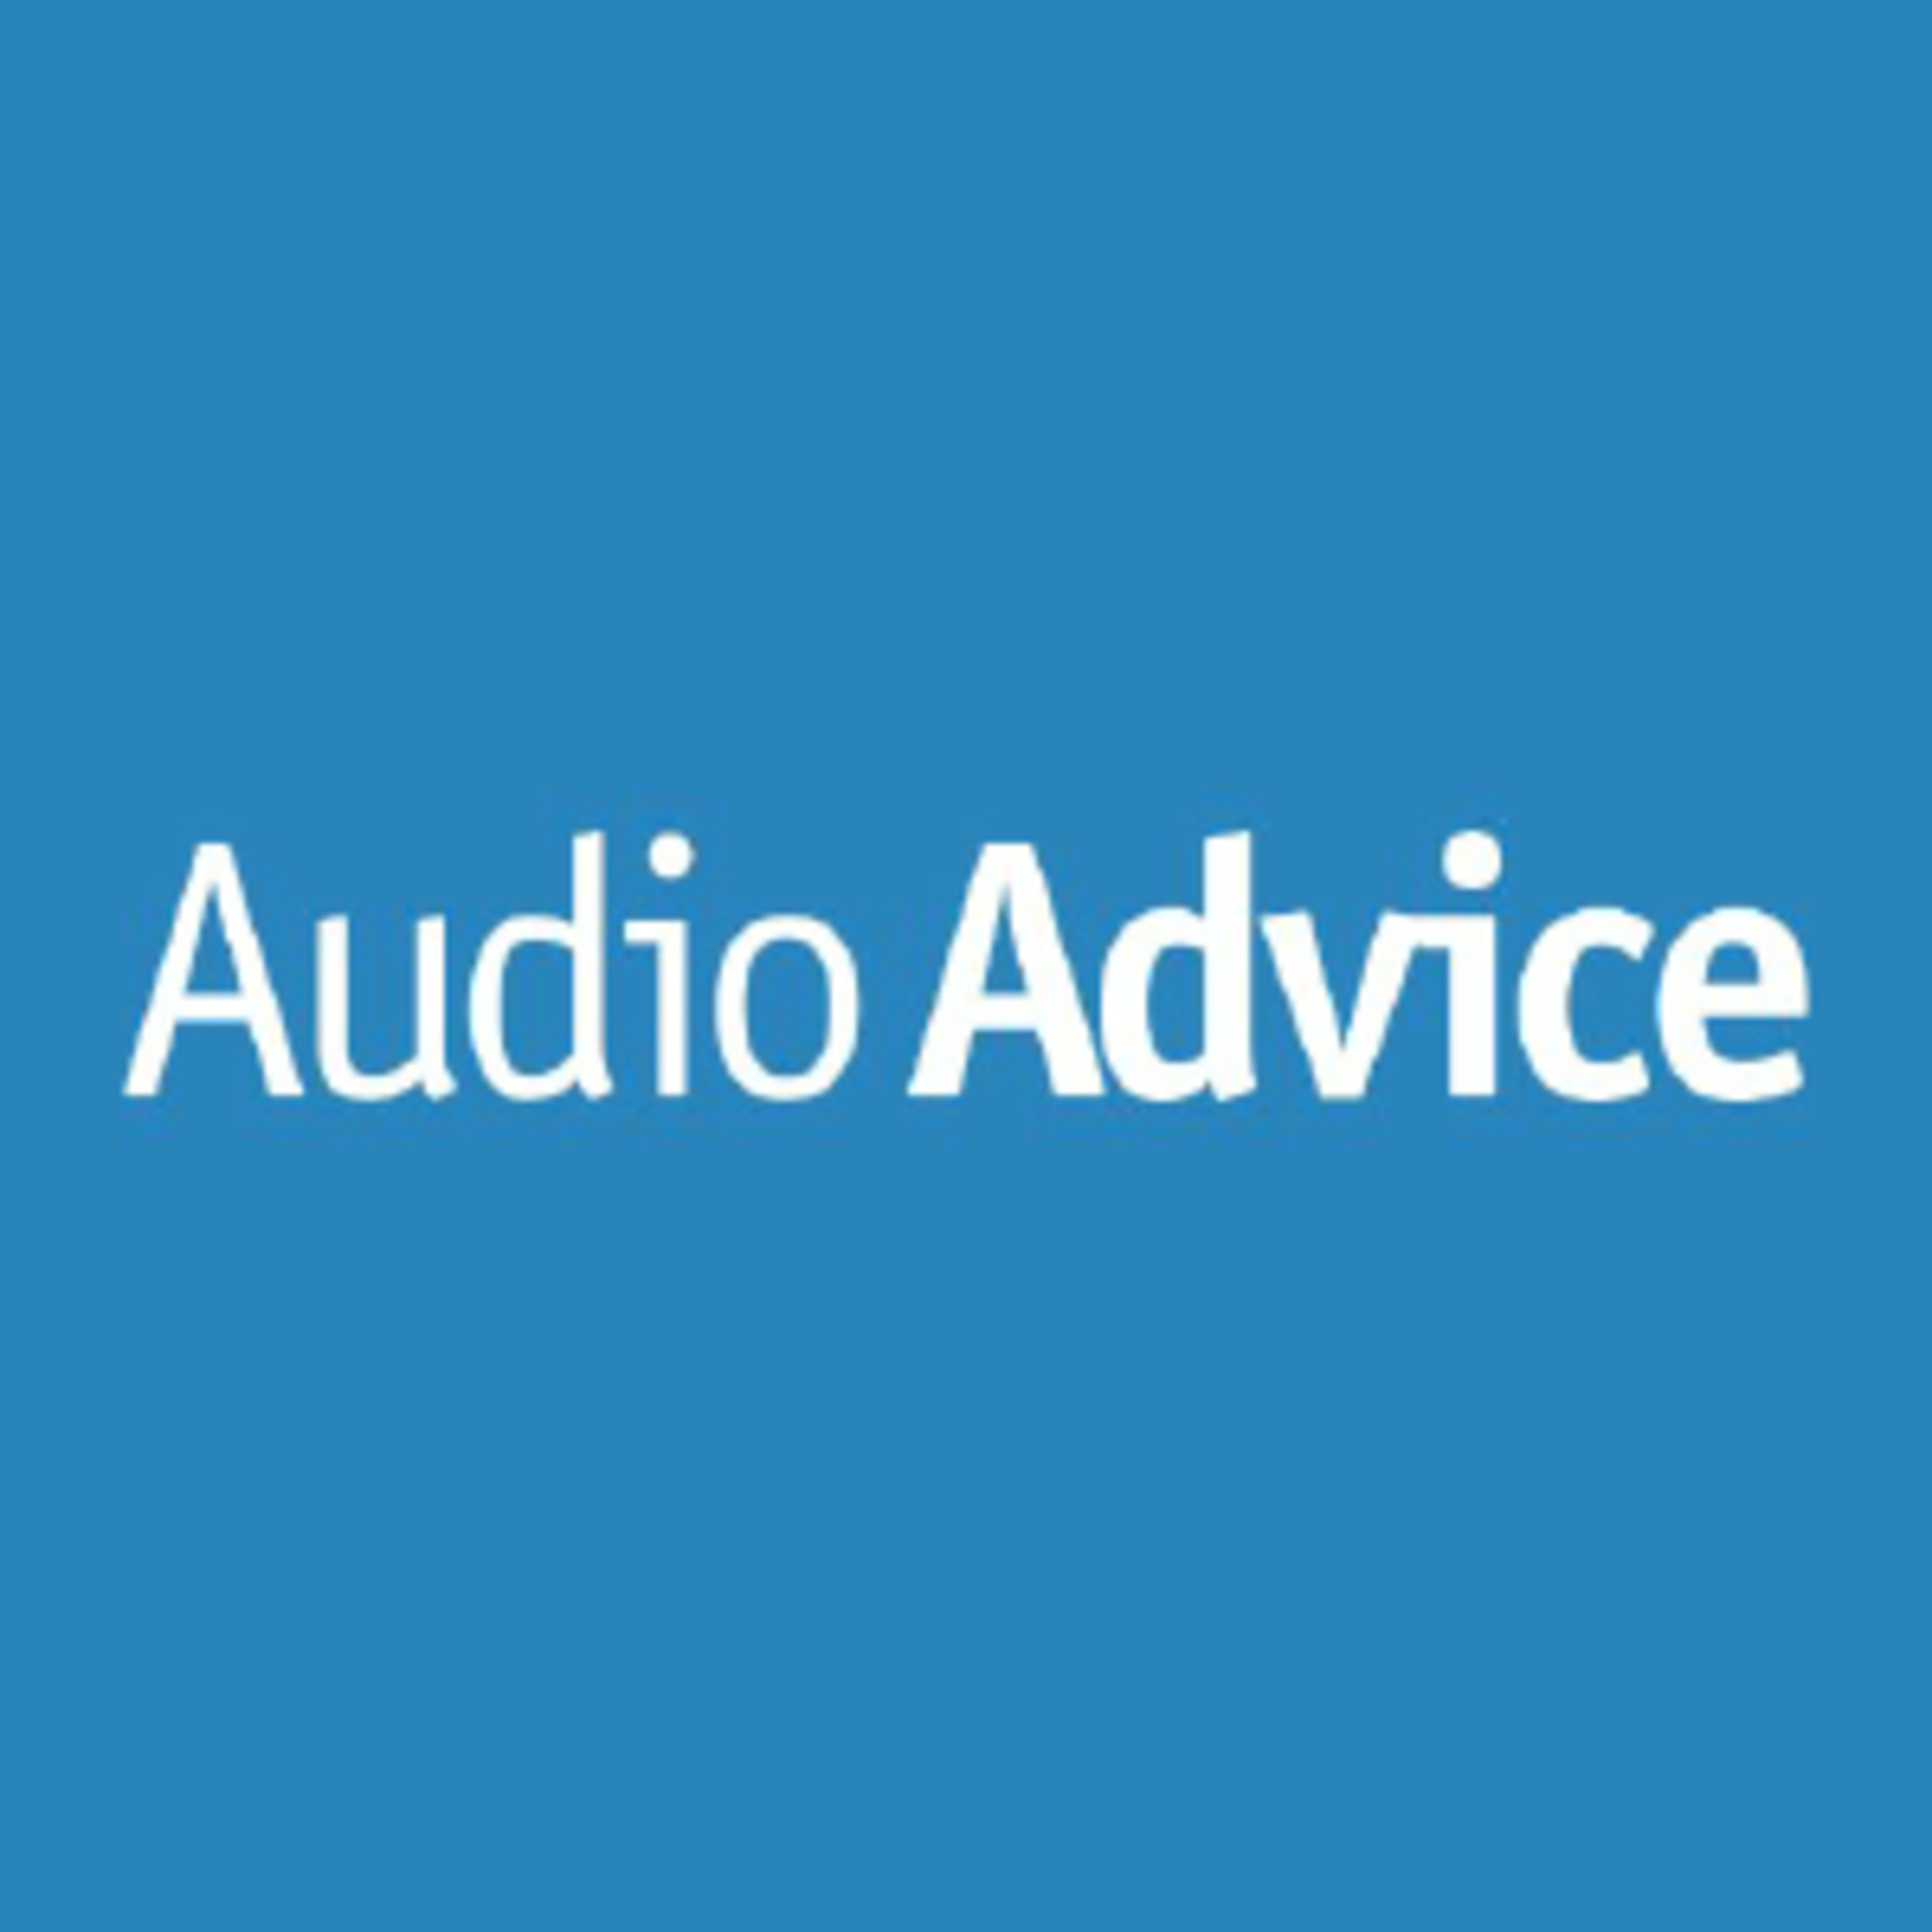 Audio Advice Code